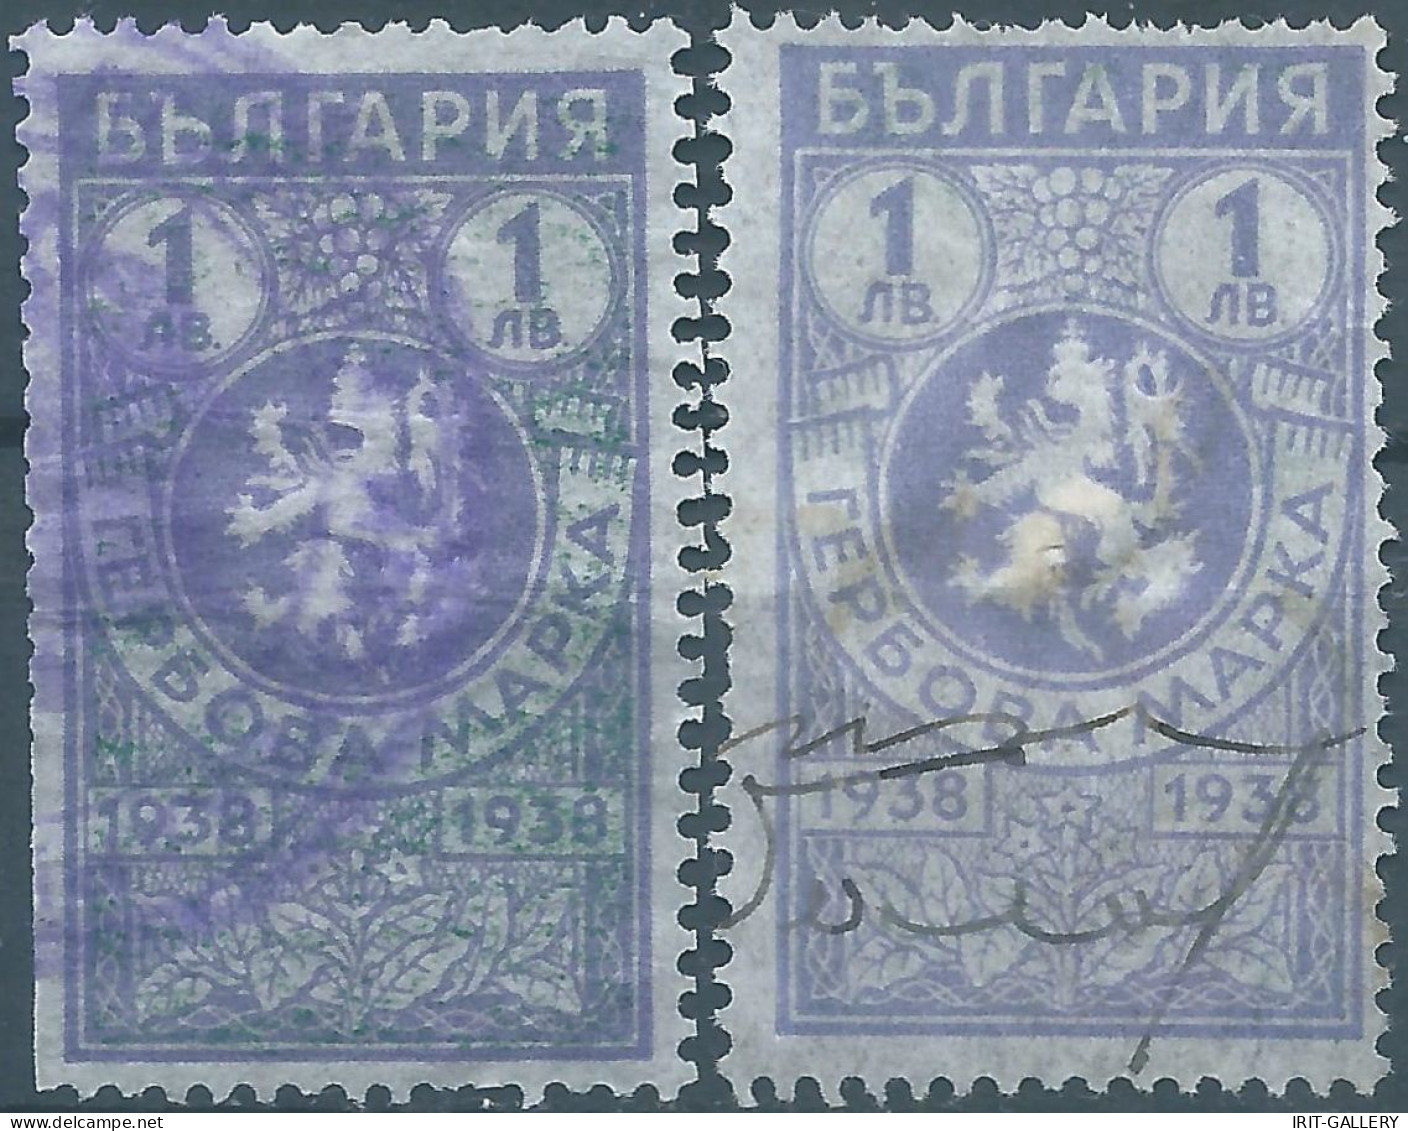 Bulgaria - Bulgarien - Bulgare,1938 Revenue Stamps Tax Fiscal,Used - Francobolli Di Servizio